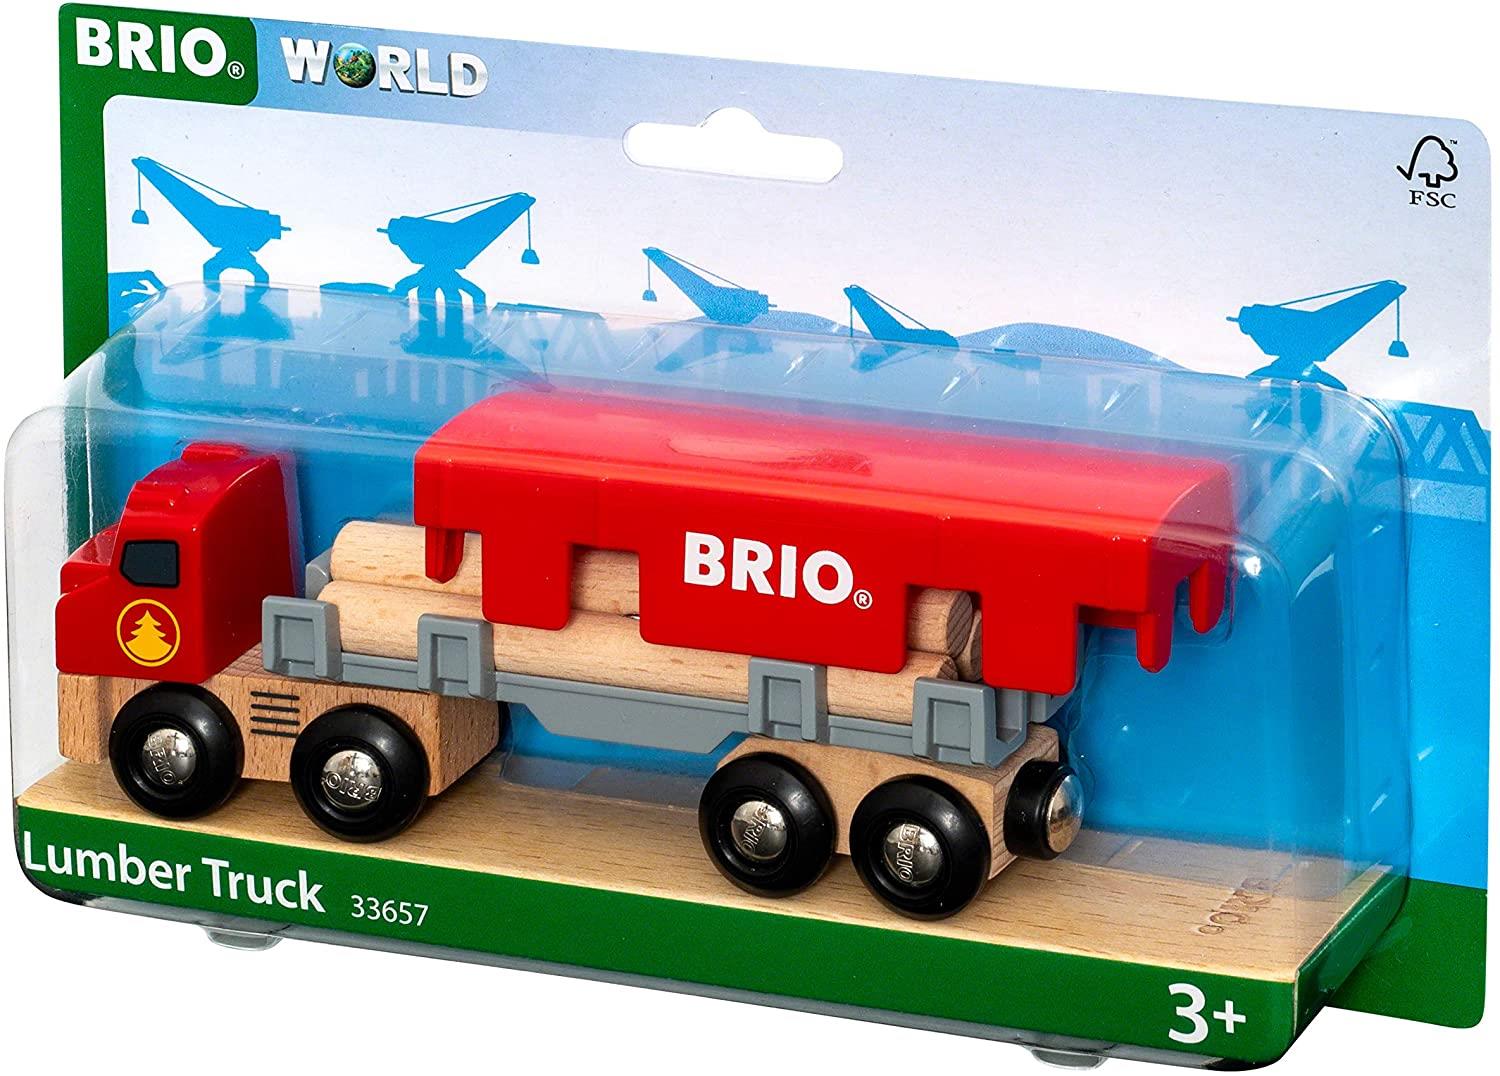 Brio World 33657 Lumber Truck